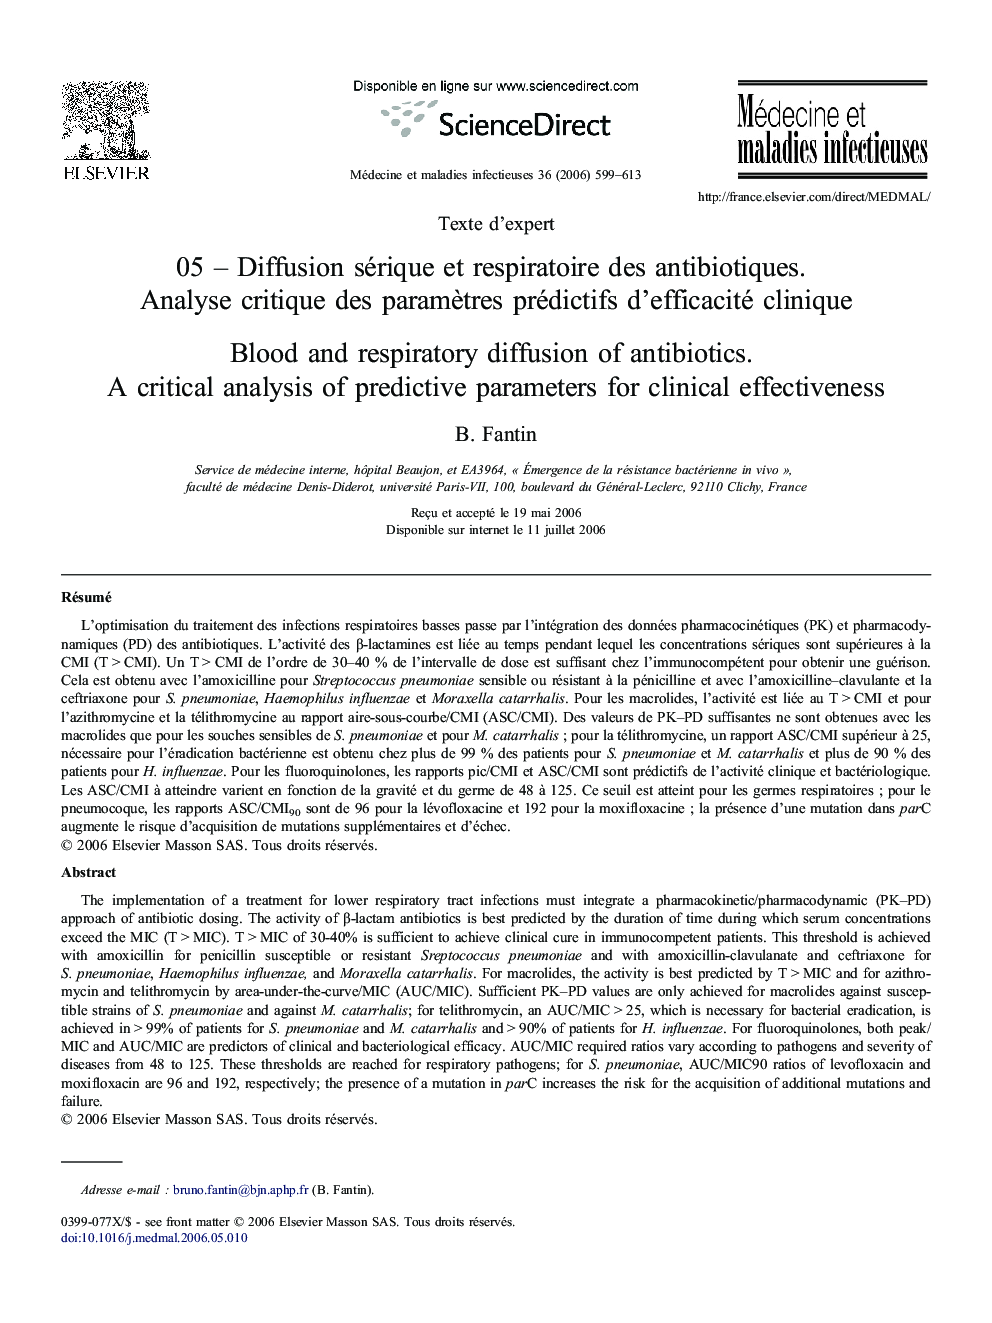 05 – Diffusion sérique et respiratoire des antibiotiques. Analyse critique des paramètres prédictifs d'efficacité clinique